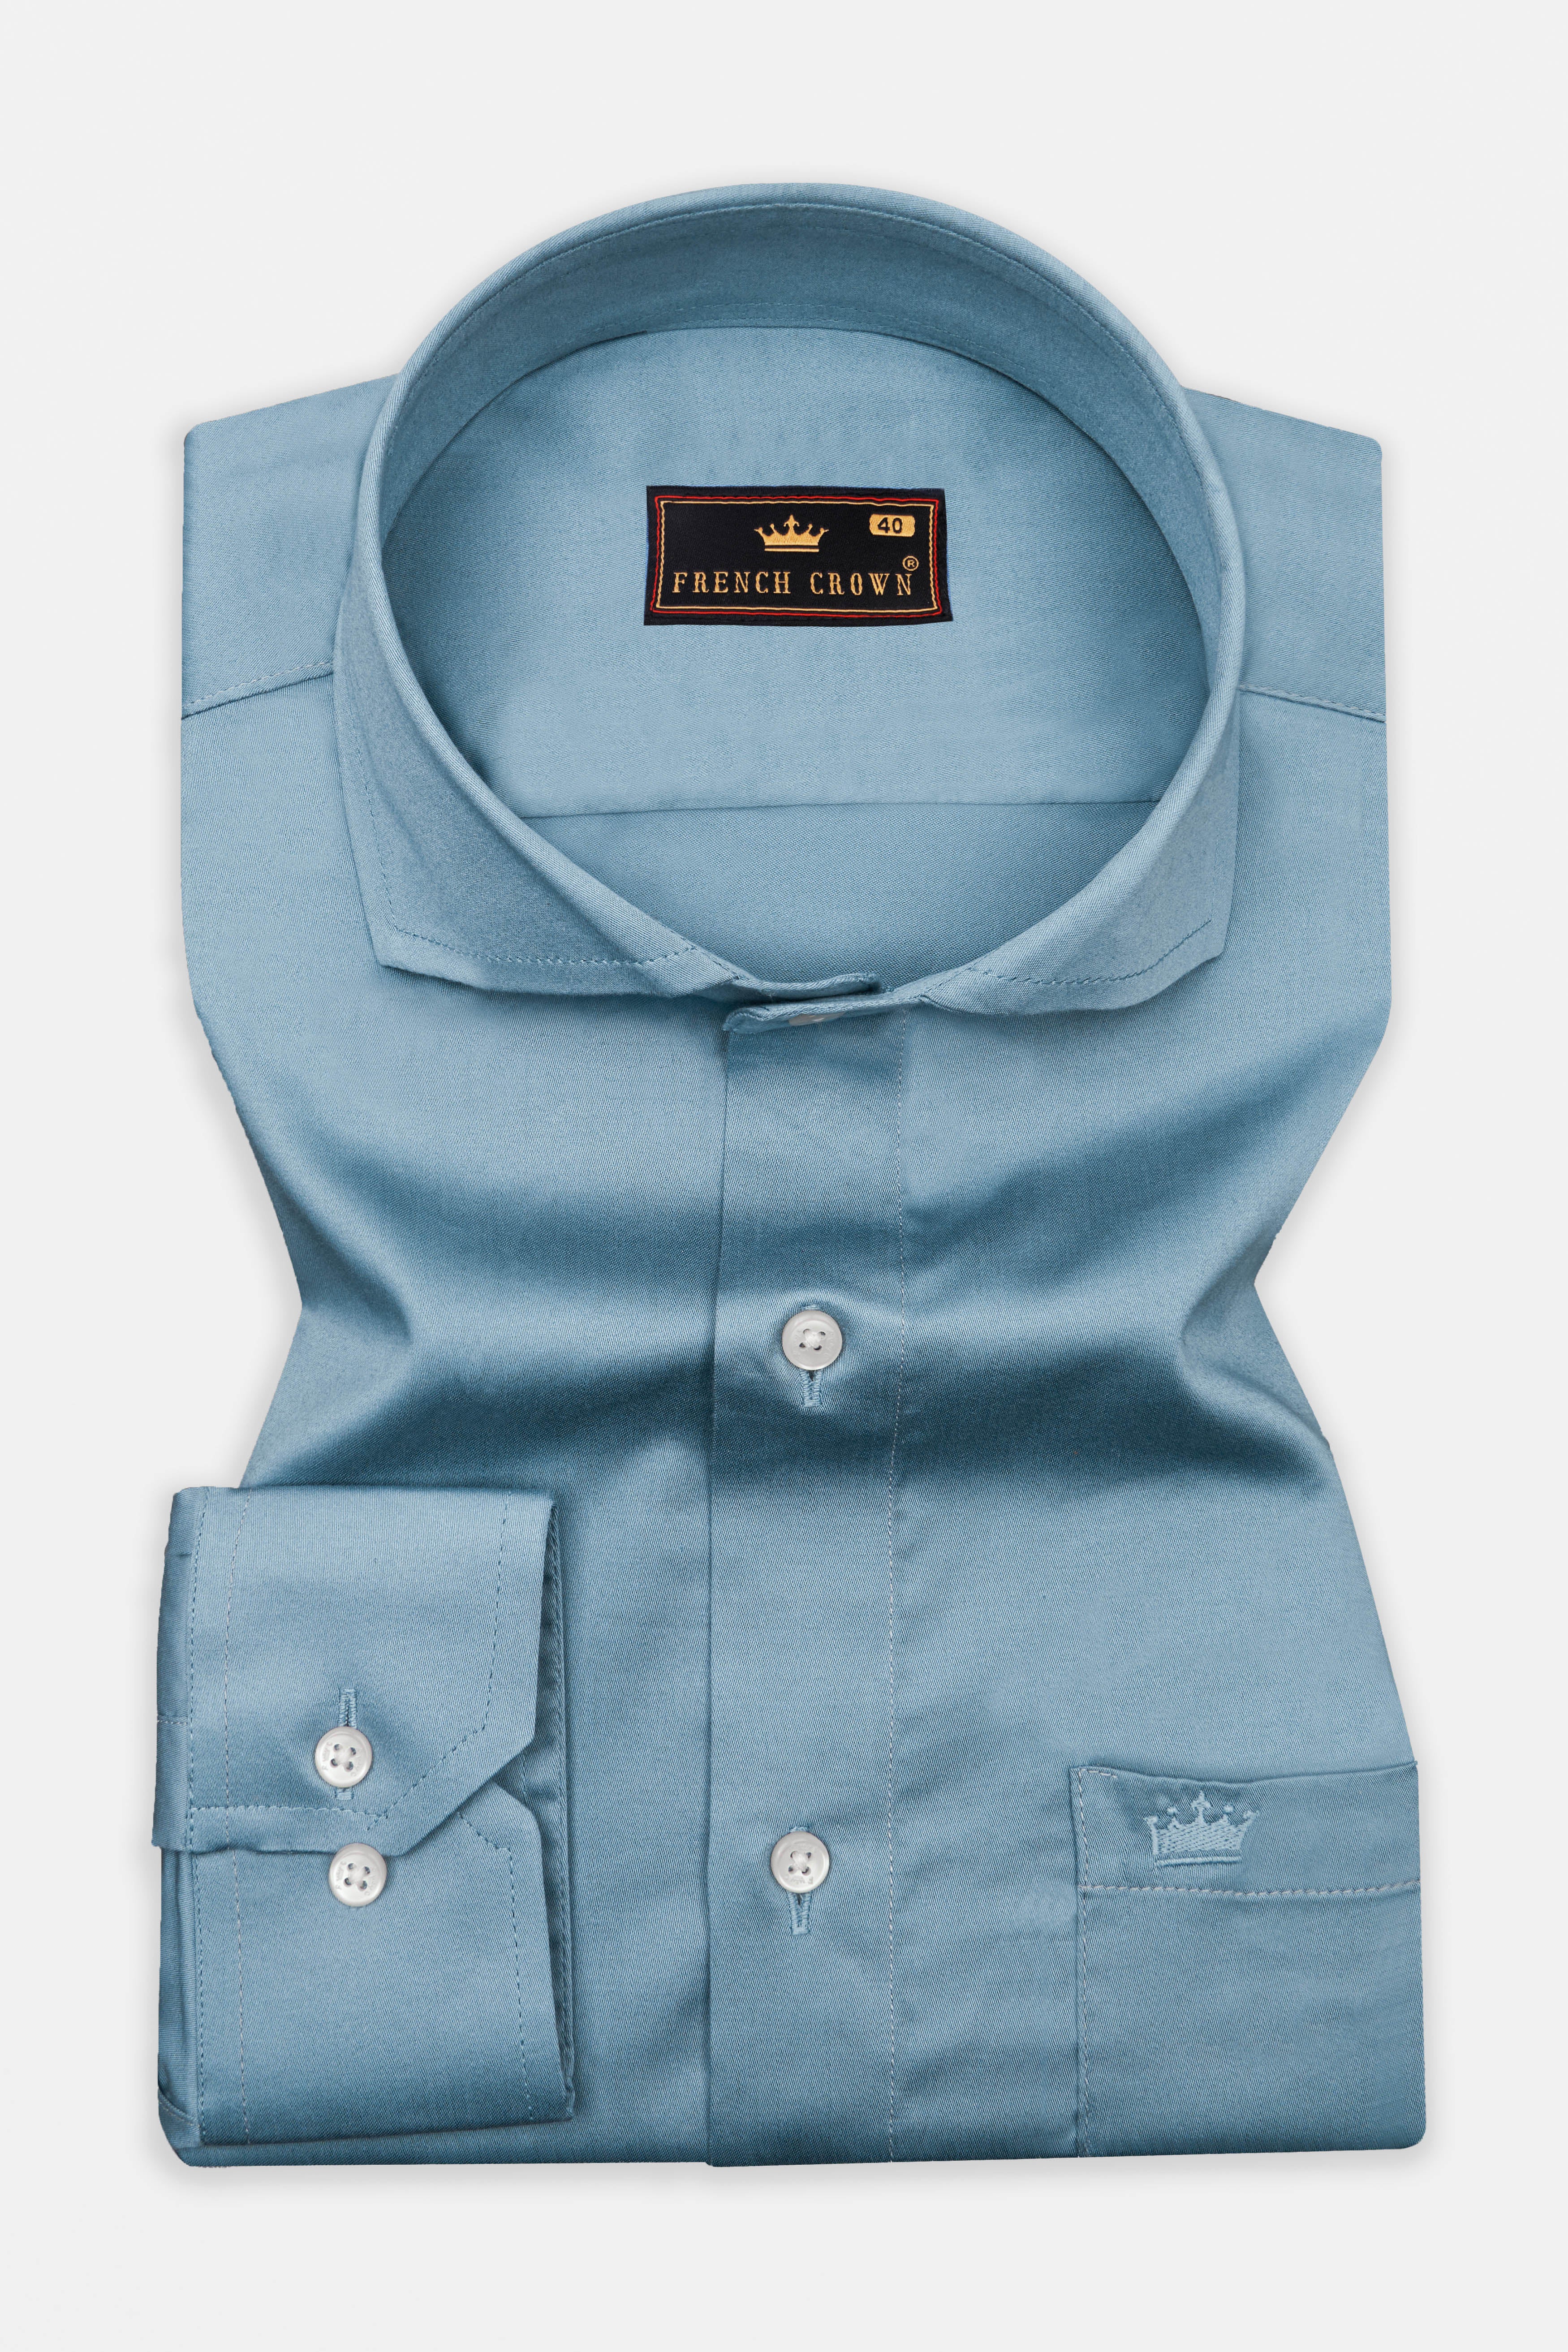 Bluish Cyan Blue with Dolphin Embroidered Super Soft Premium Cotton Designer Shirt